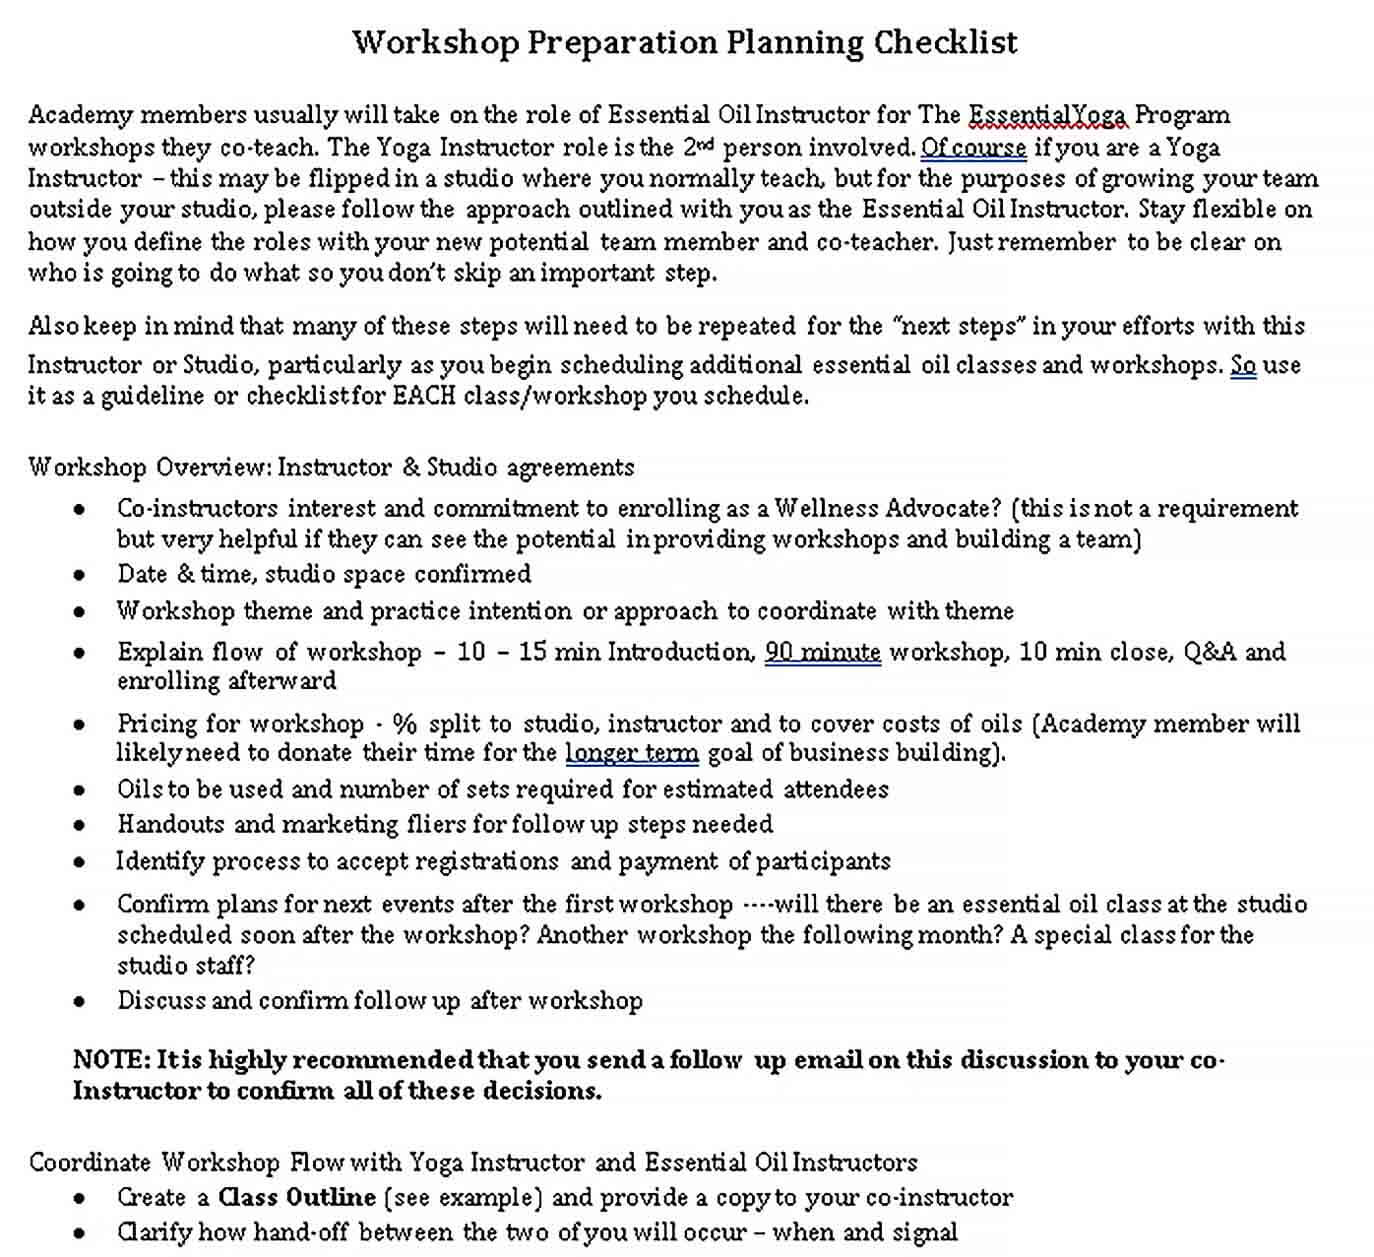 Sample Workshop Preparation Planning Checklist